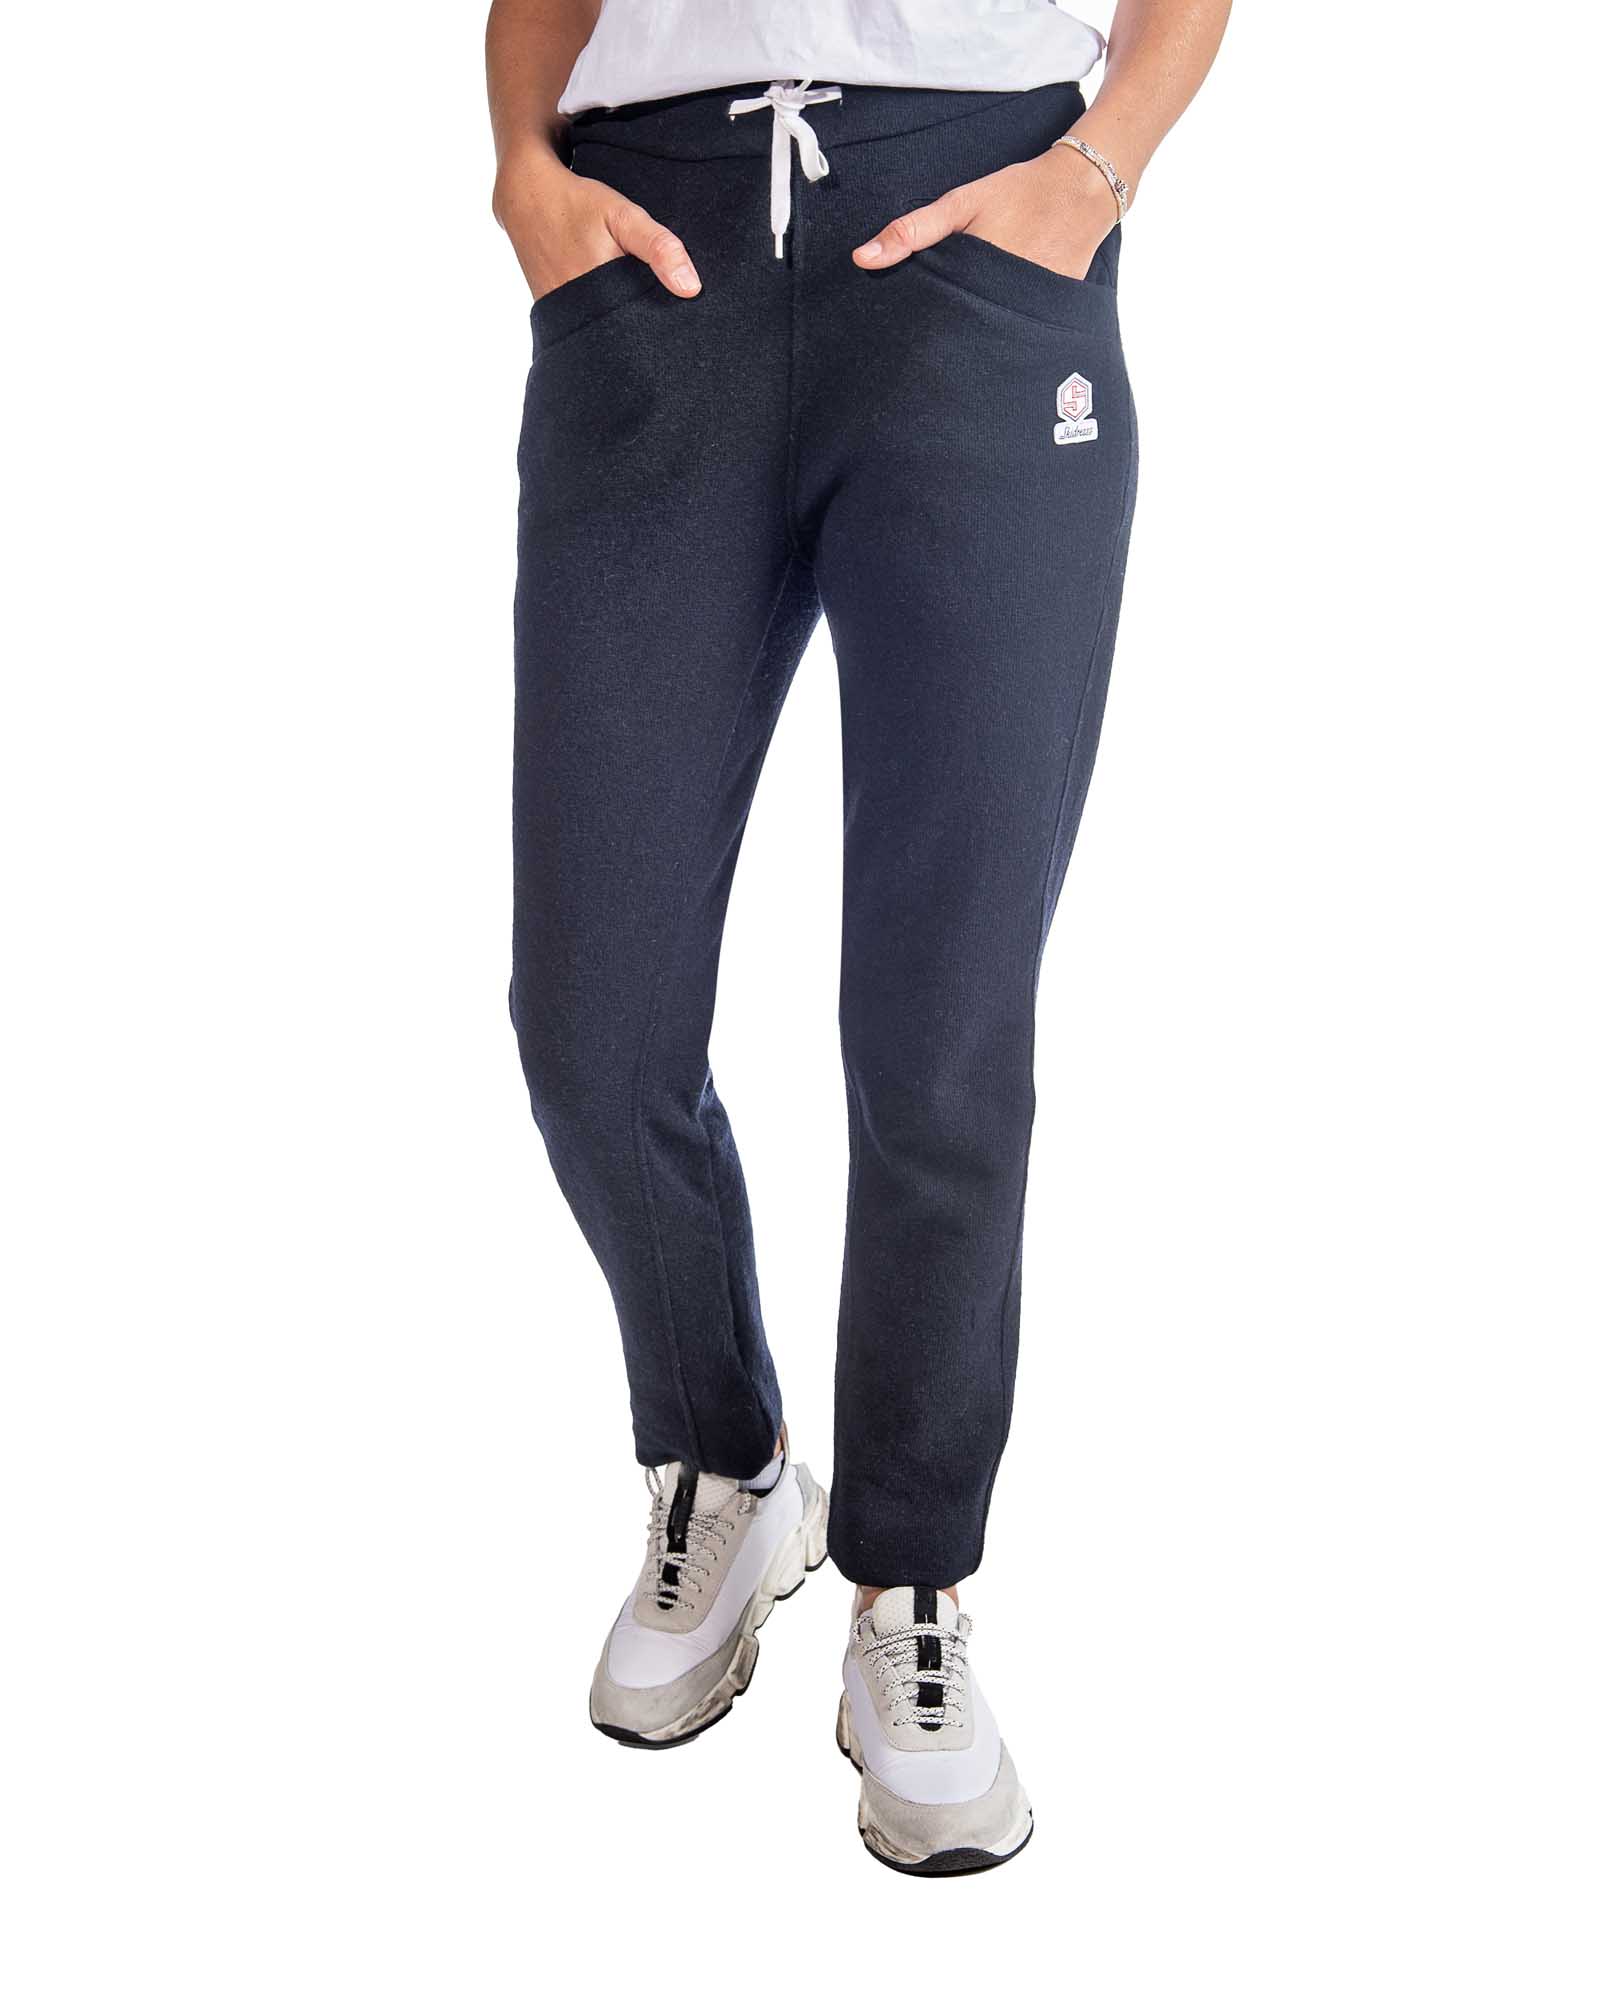 Candygirls Pantalon de jogging thermique pour femme - Pantalon de sport -  Fermeture éclair - Poches de fitness - 41505, gris, S : : Mode